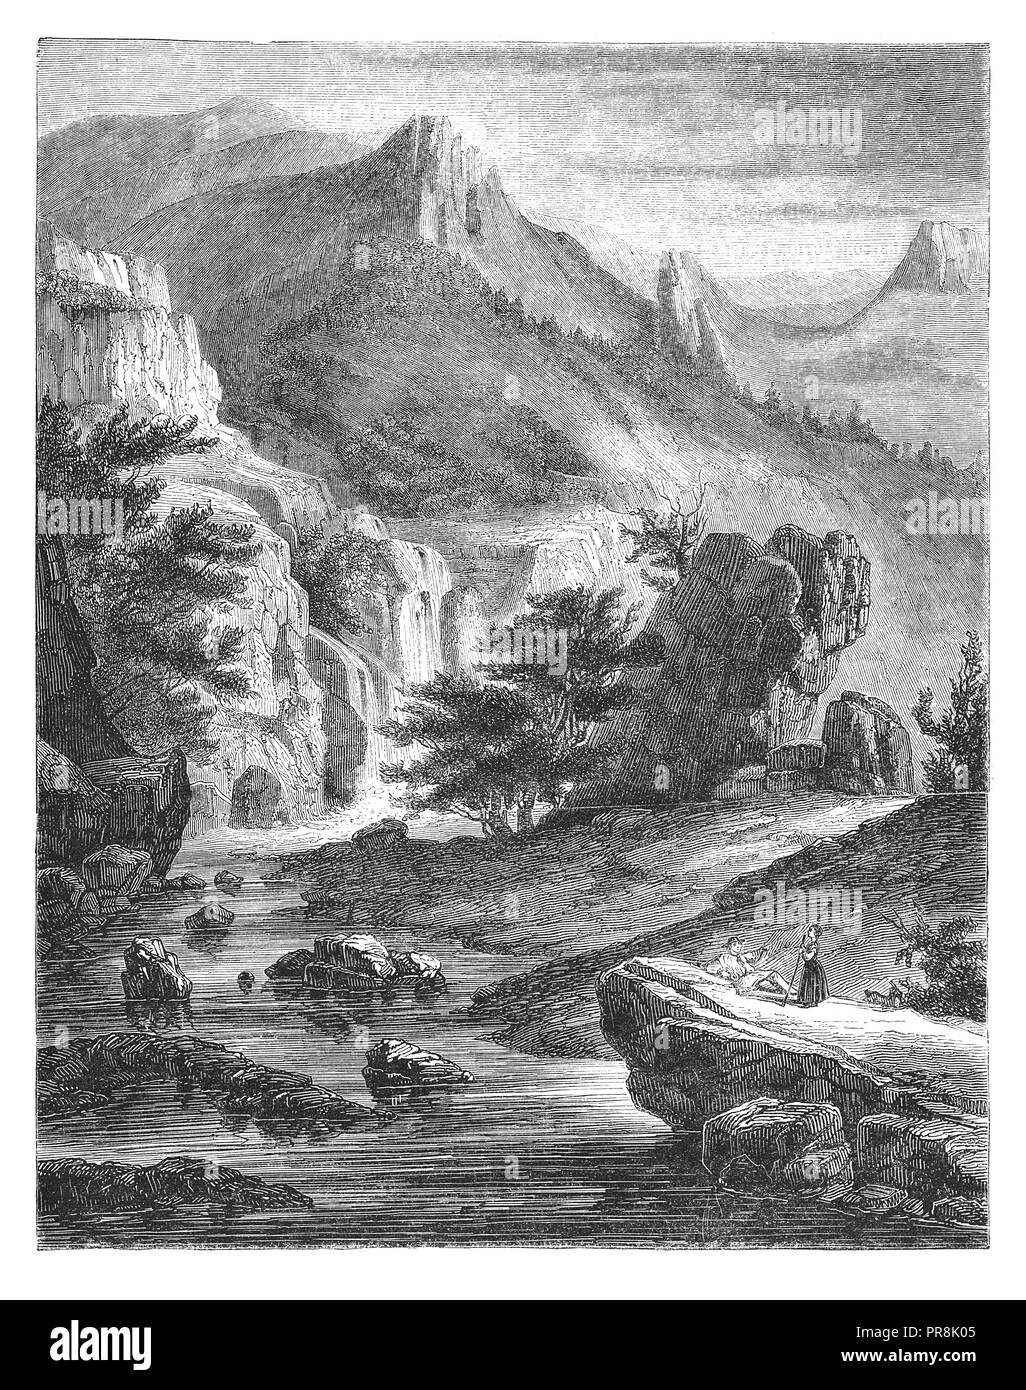 Xix secolo illustrazione della vista della valle Chaudefour, nel dipartimento del Puy-de-Dôme, distretto di Issoire. Illustrazione originale pubblicato in Le ma Foto Stock